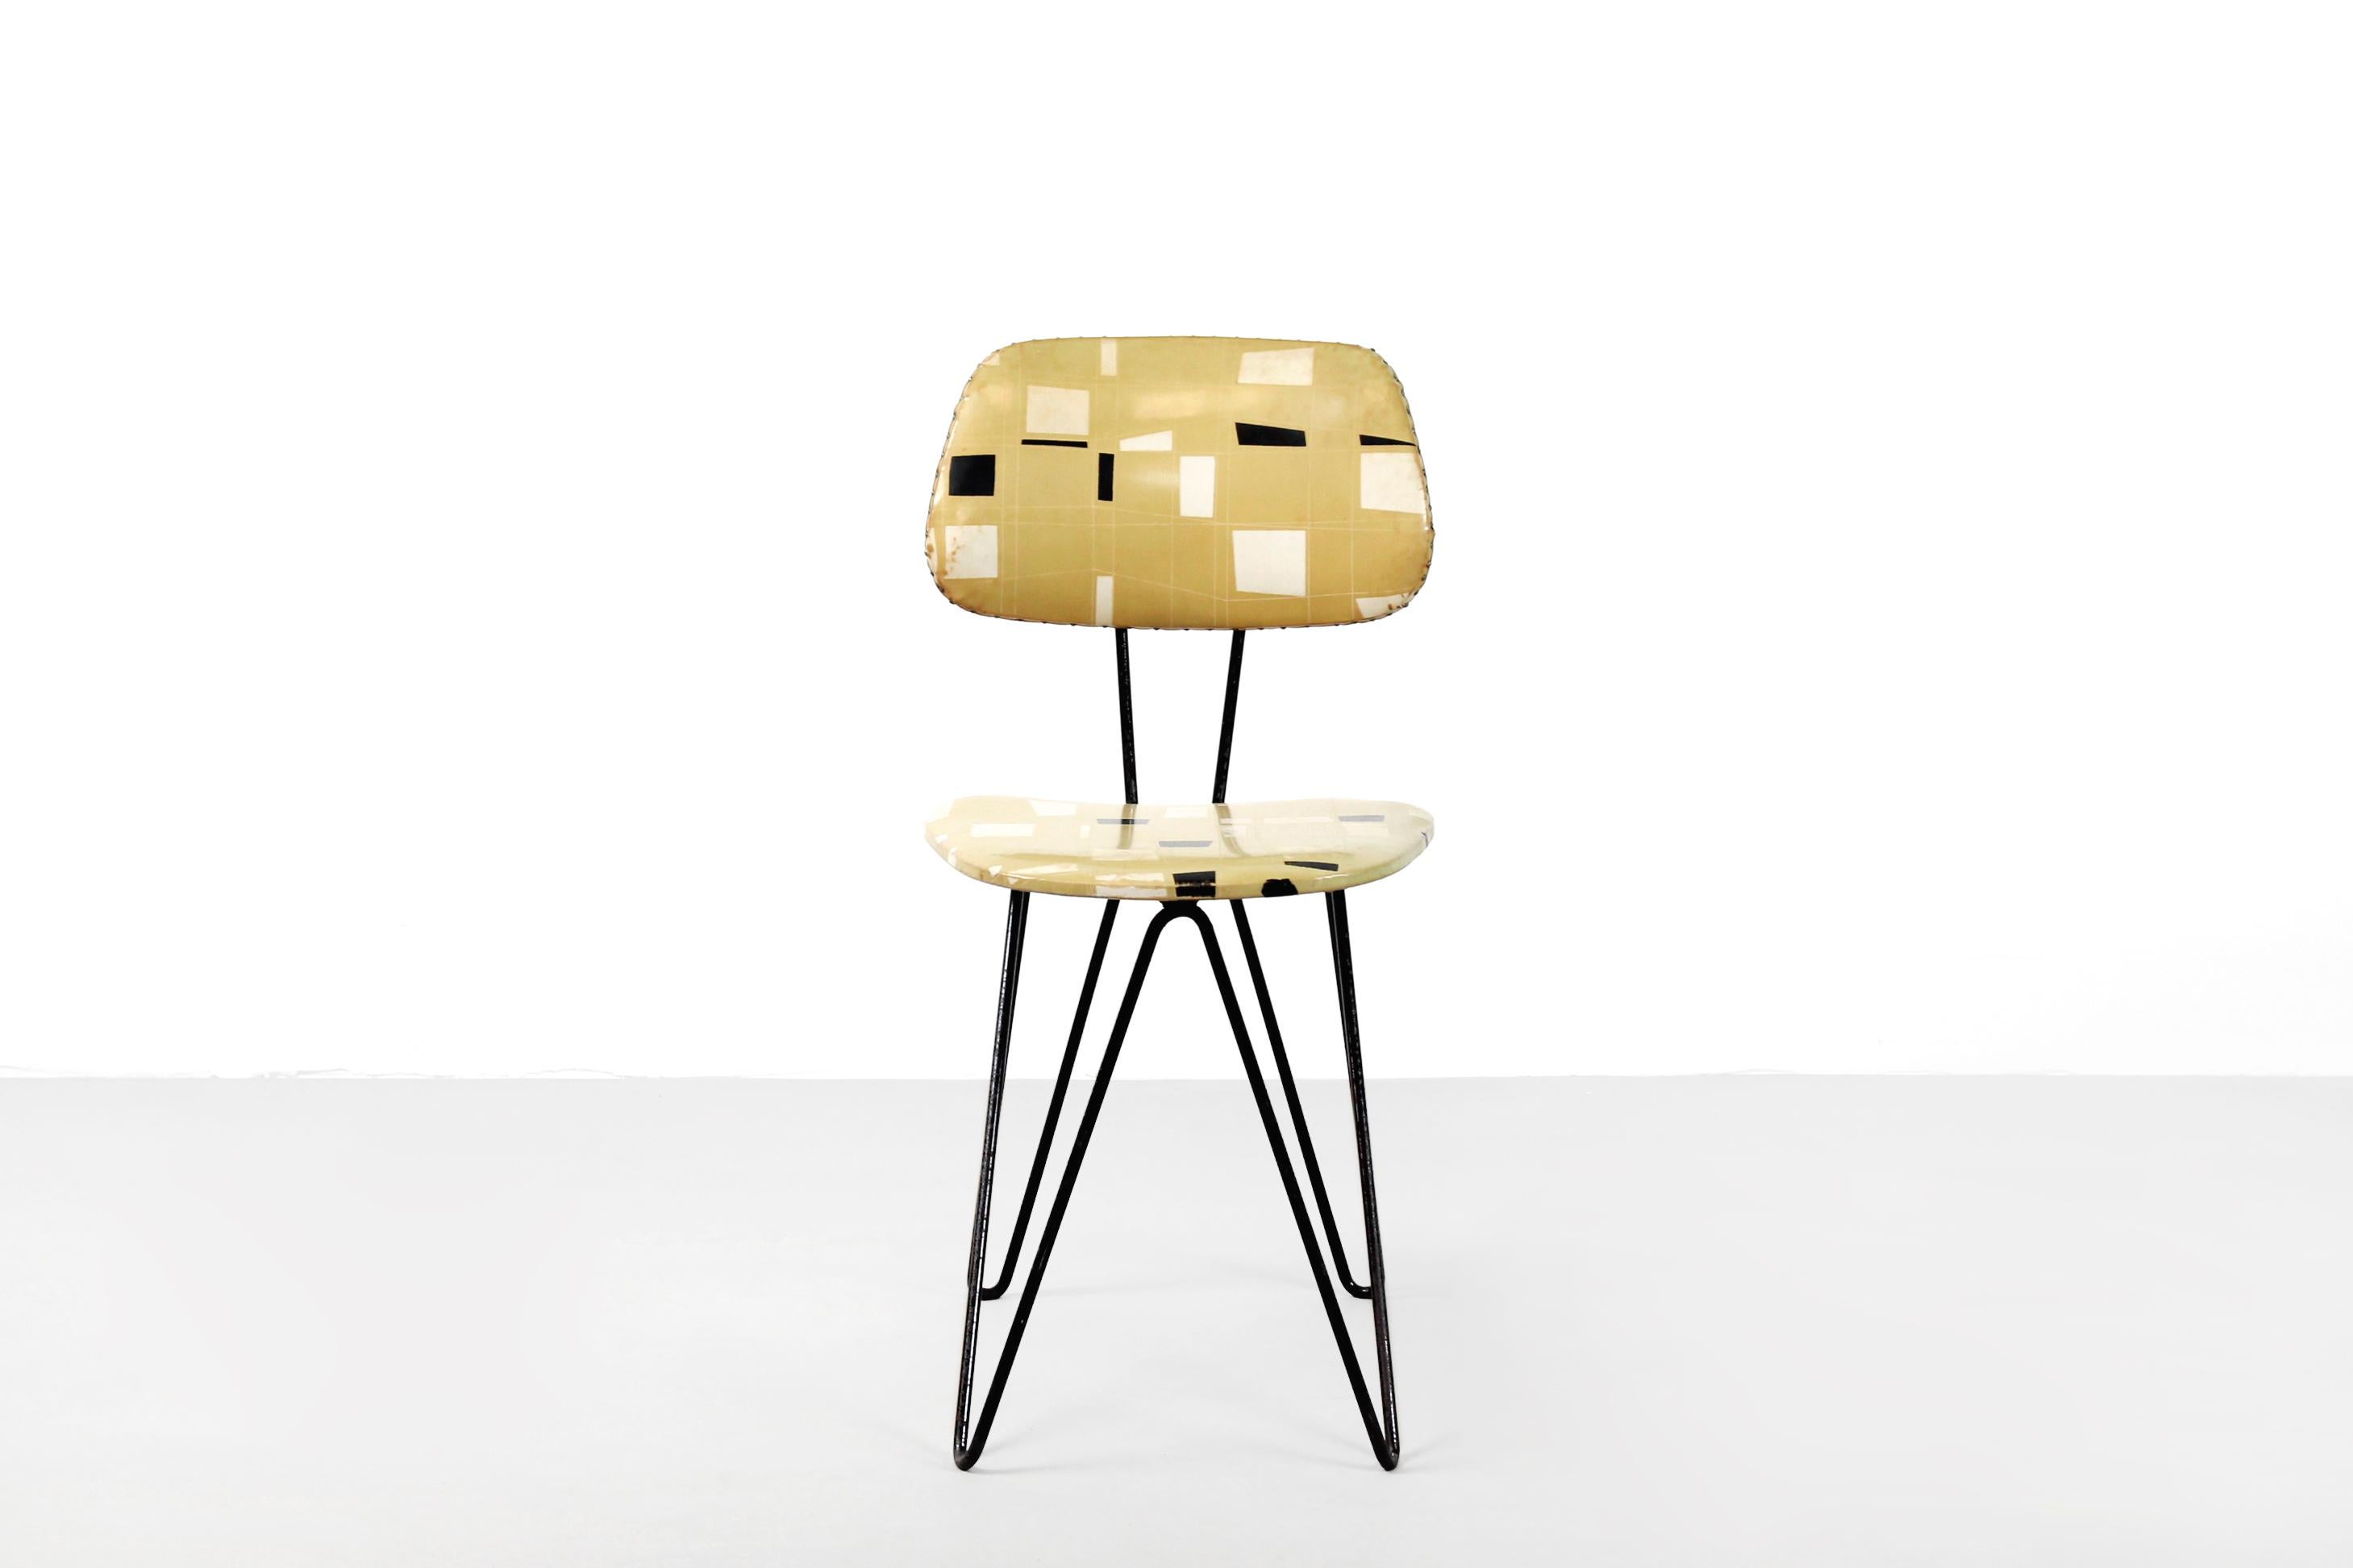 Cette chaise au design minimaliste hollandais, rare et difficile à trouver, a été conçue par Cees Braakman dans les années 1950 et porte le nom de modèle SM01. La chaise a une structure en métal et l'assise et le dossier sont tapissés dans le faux